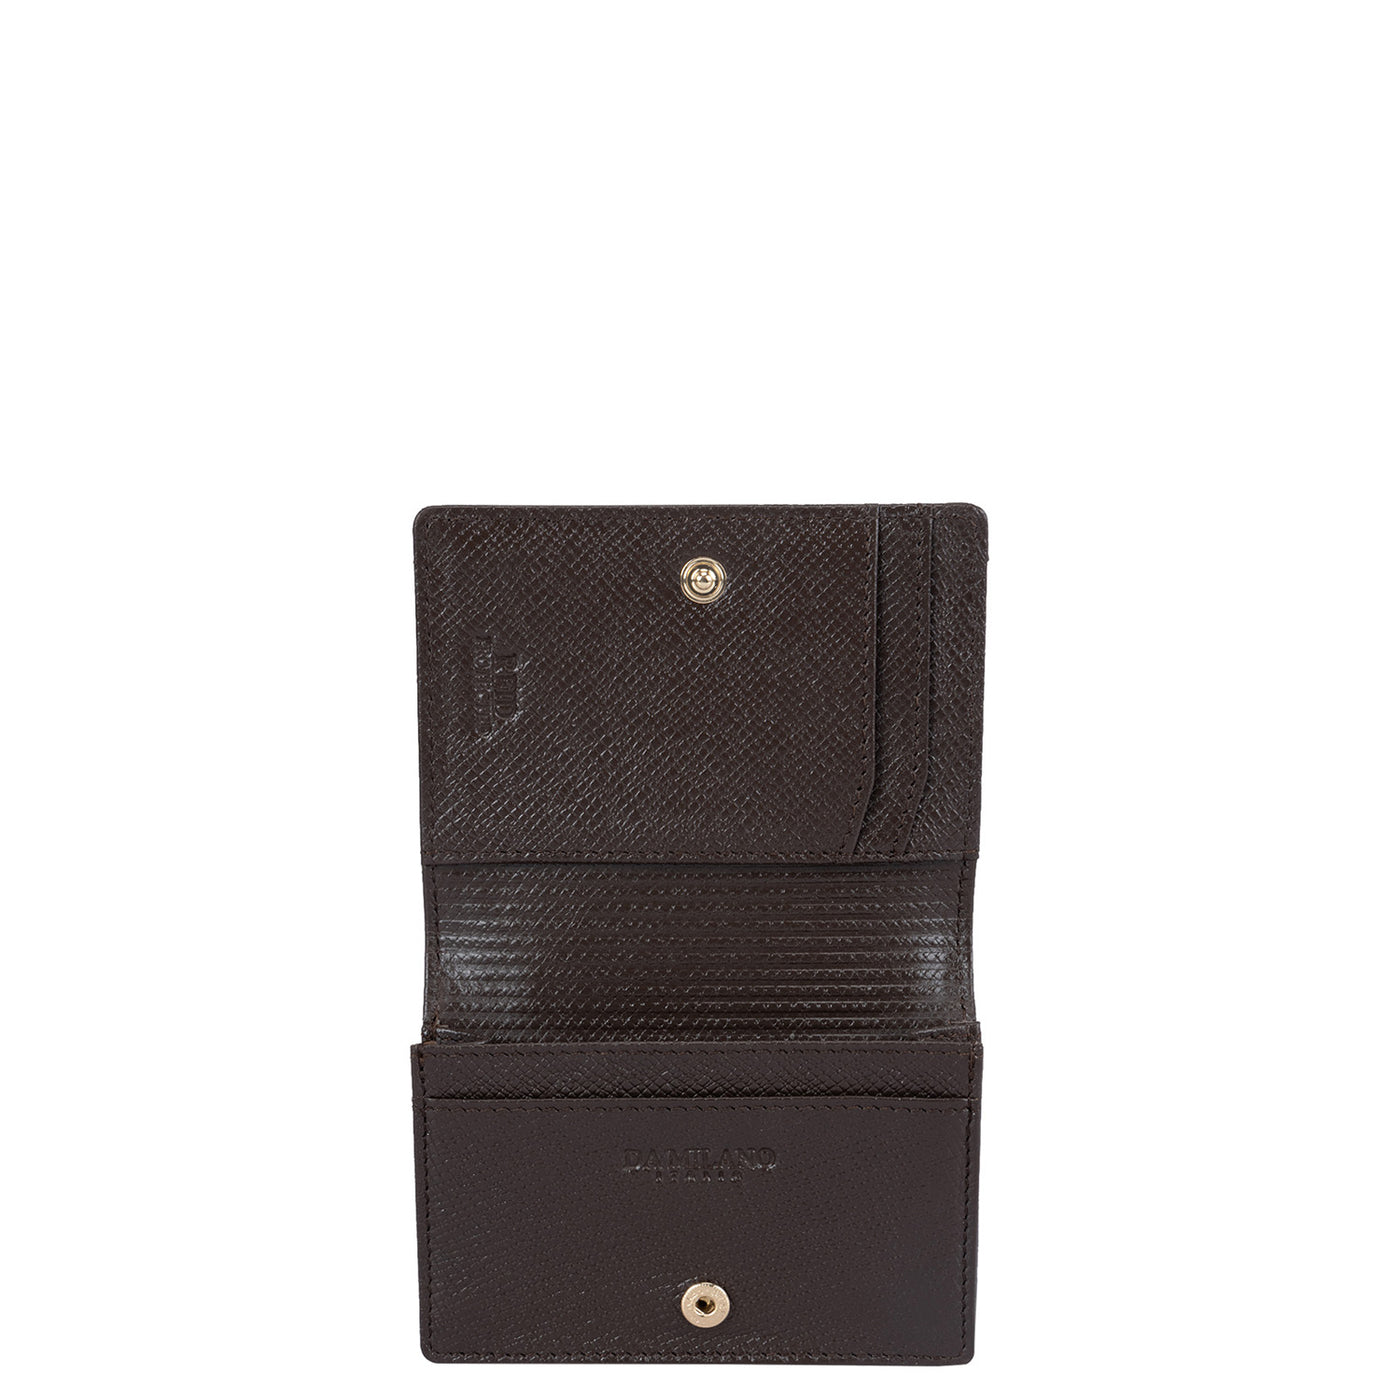 Mat Franzy Leather Card Case - Oak